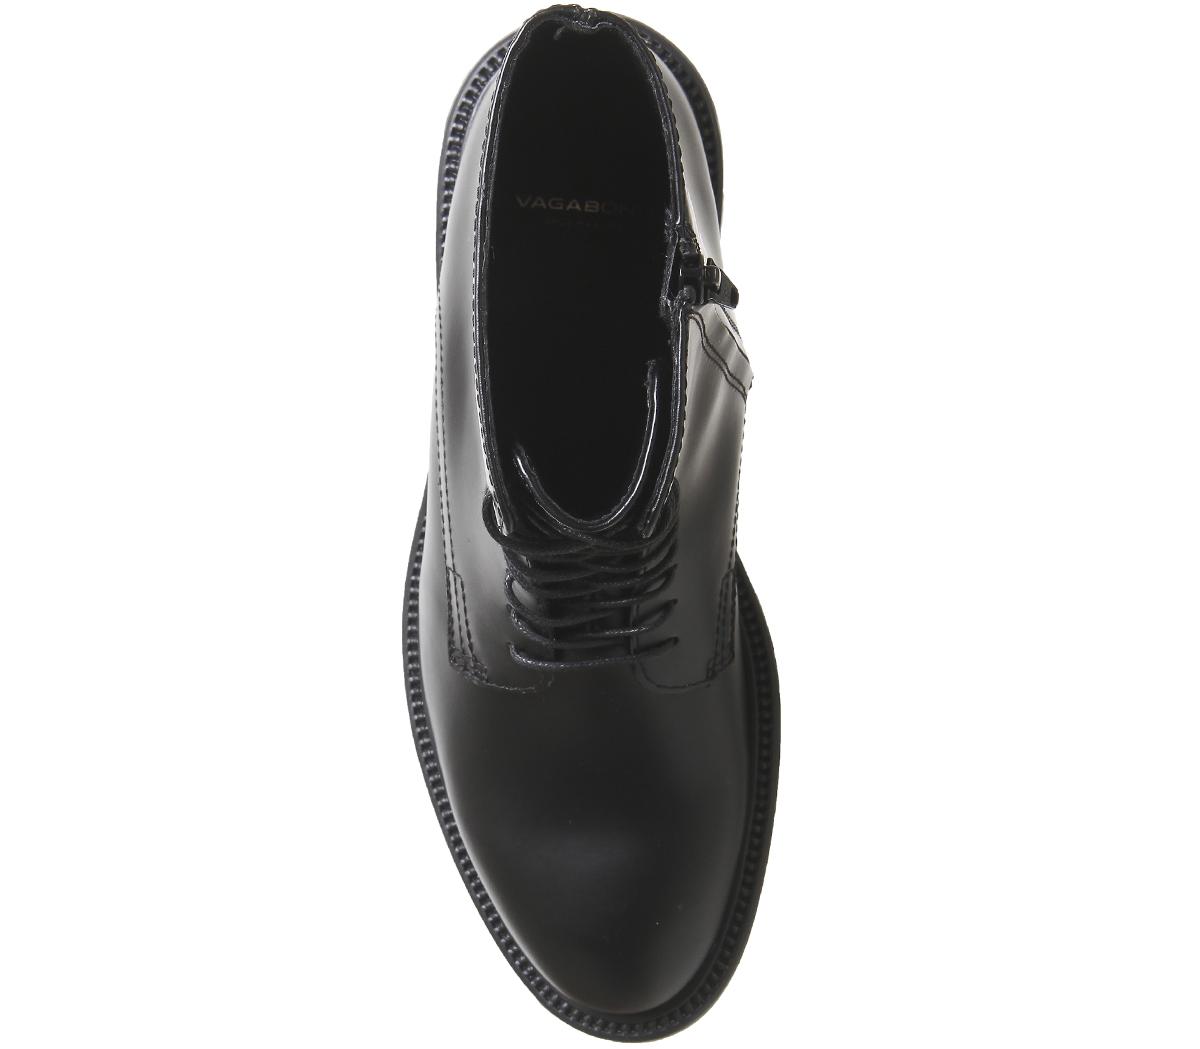 Vagabond Shoemakers Alex Lace Boots Hi Black Polished Leather - Women's ...